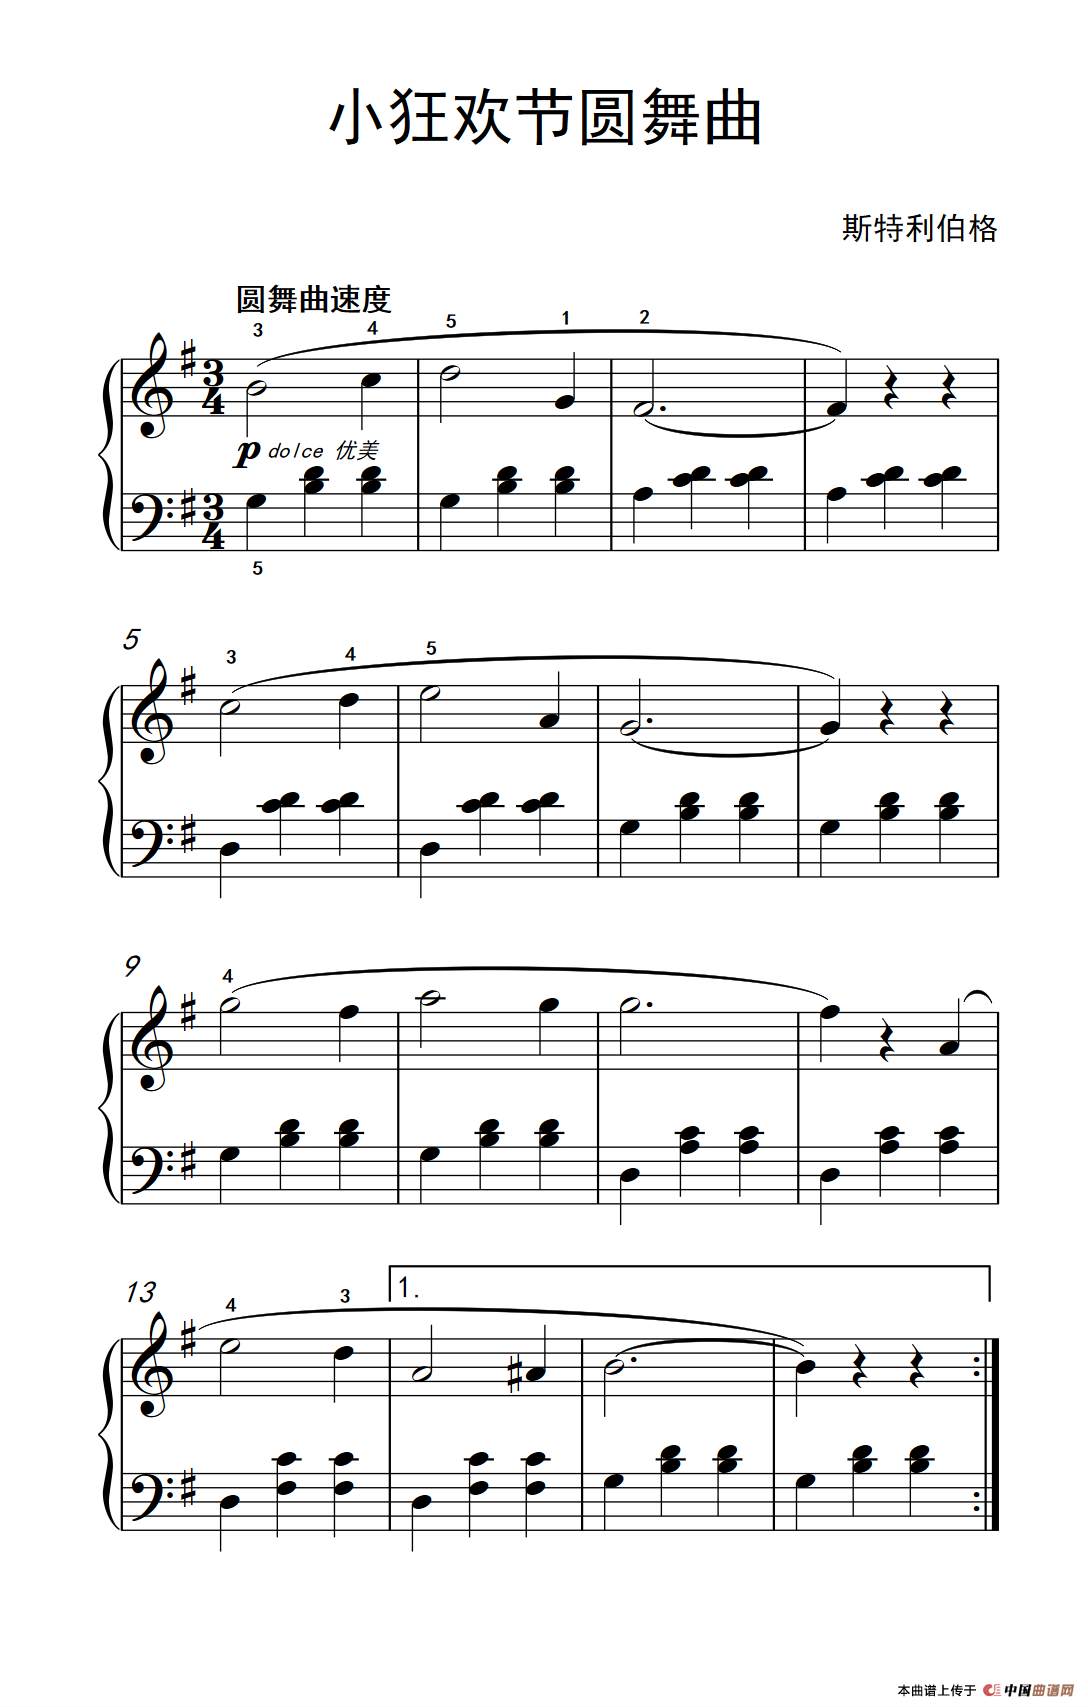 《小狂欢节圆舞曲》钢琴曲谱图分享